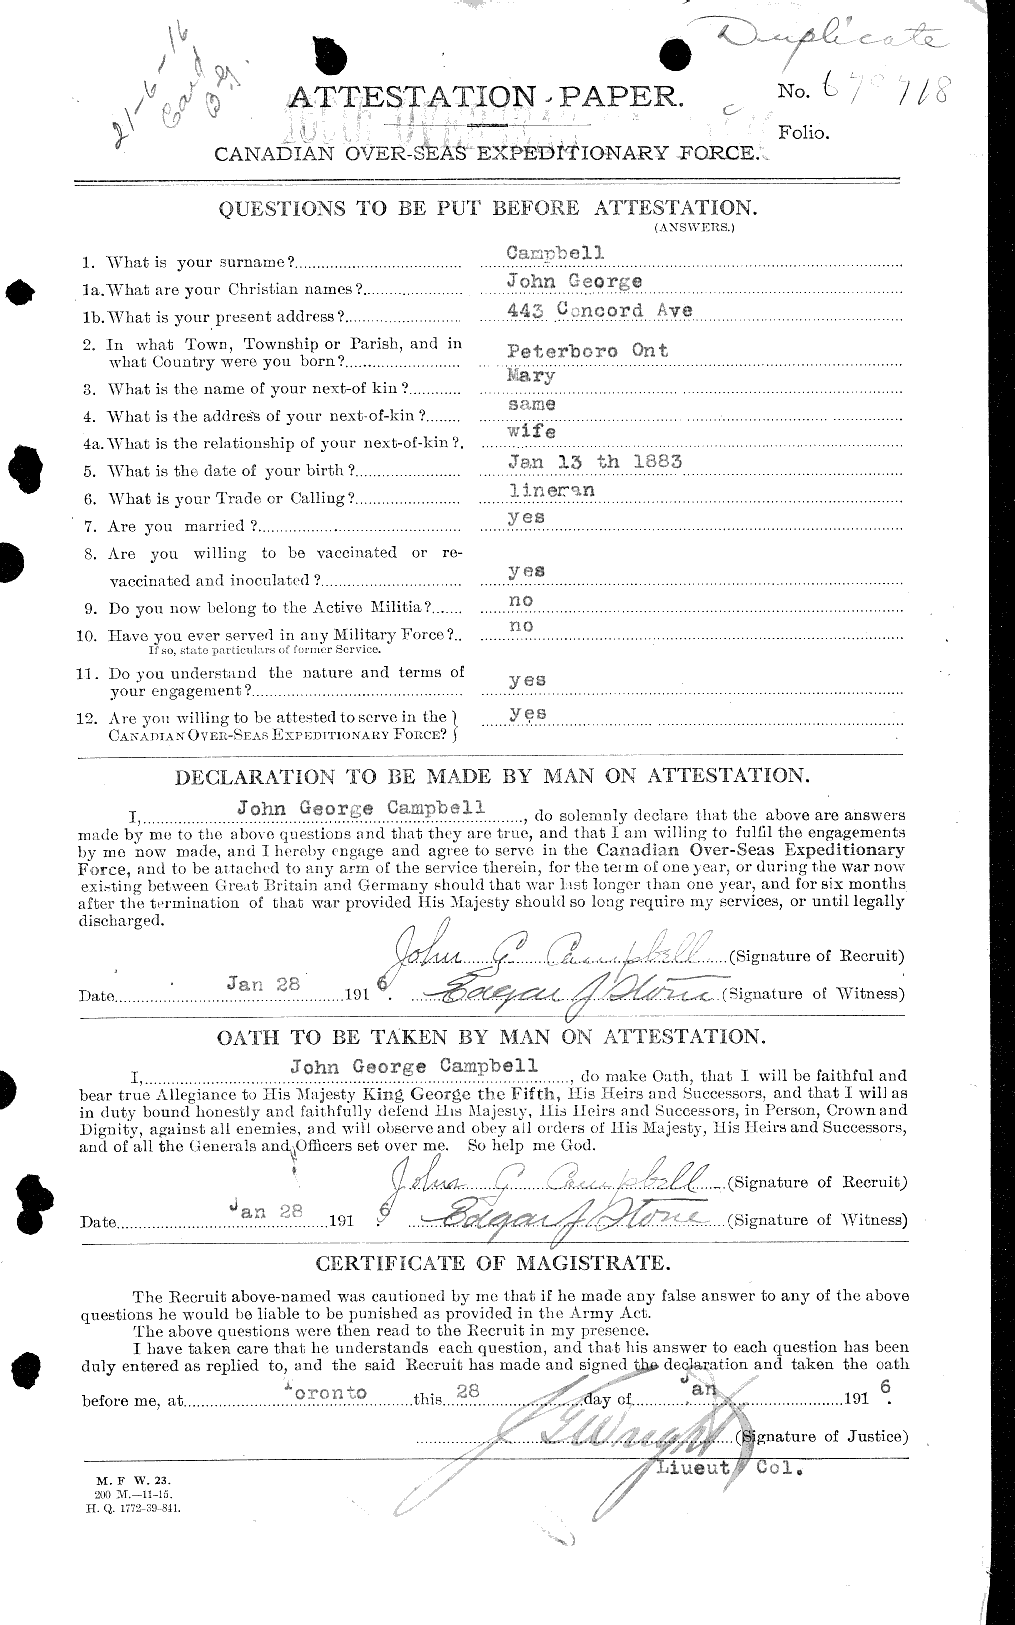 Dossiers du Personnel de la Première Guerre mondiale - CEC 008524a